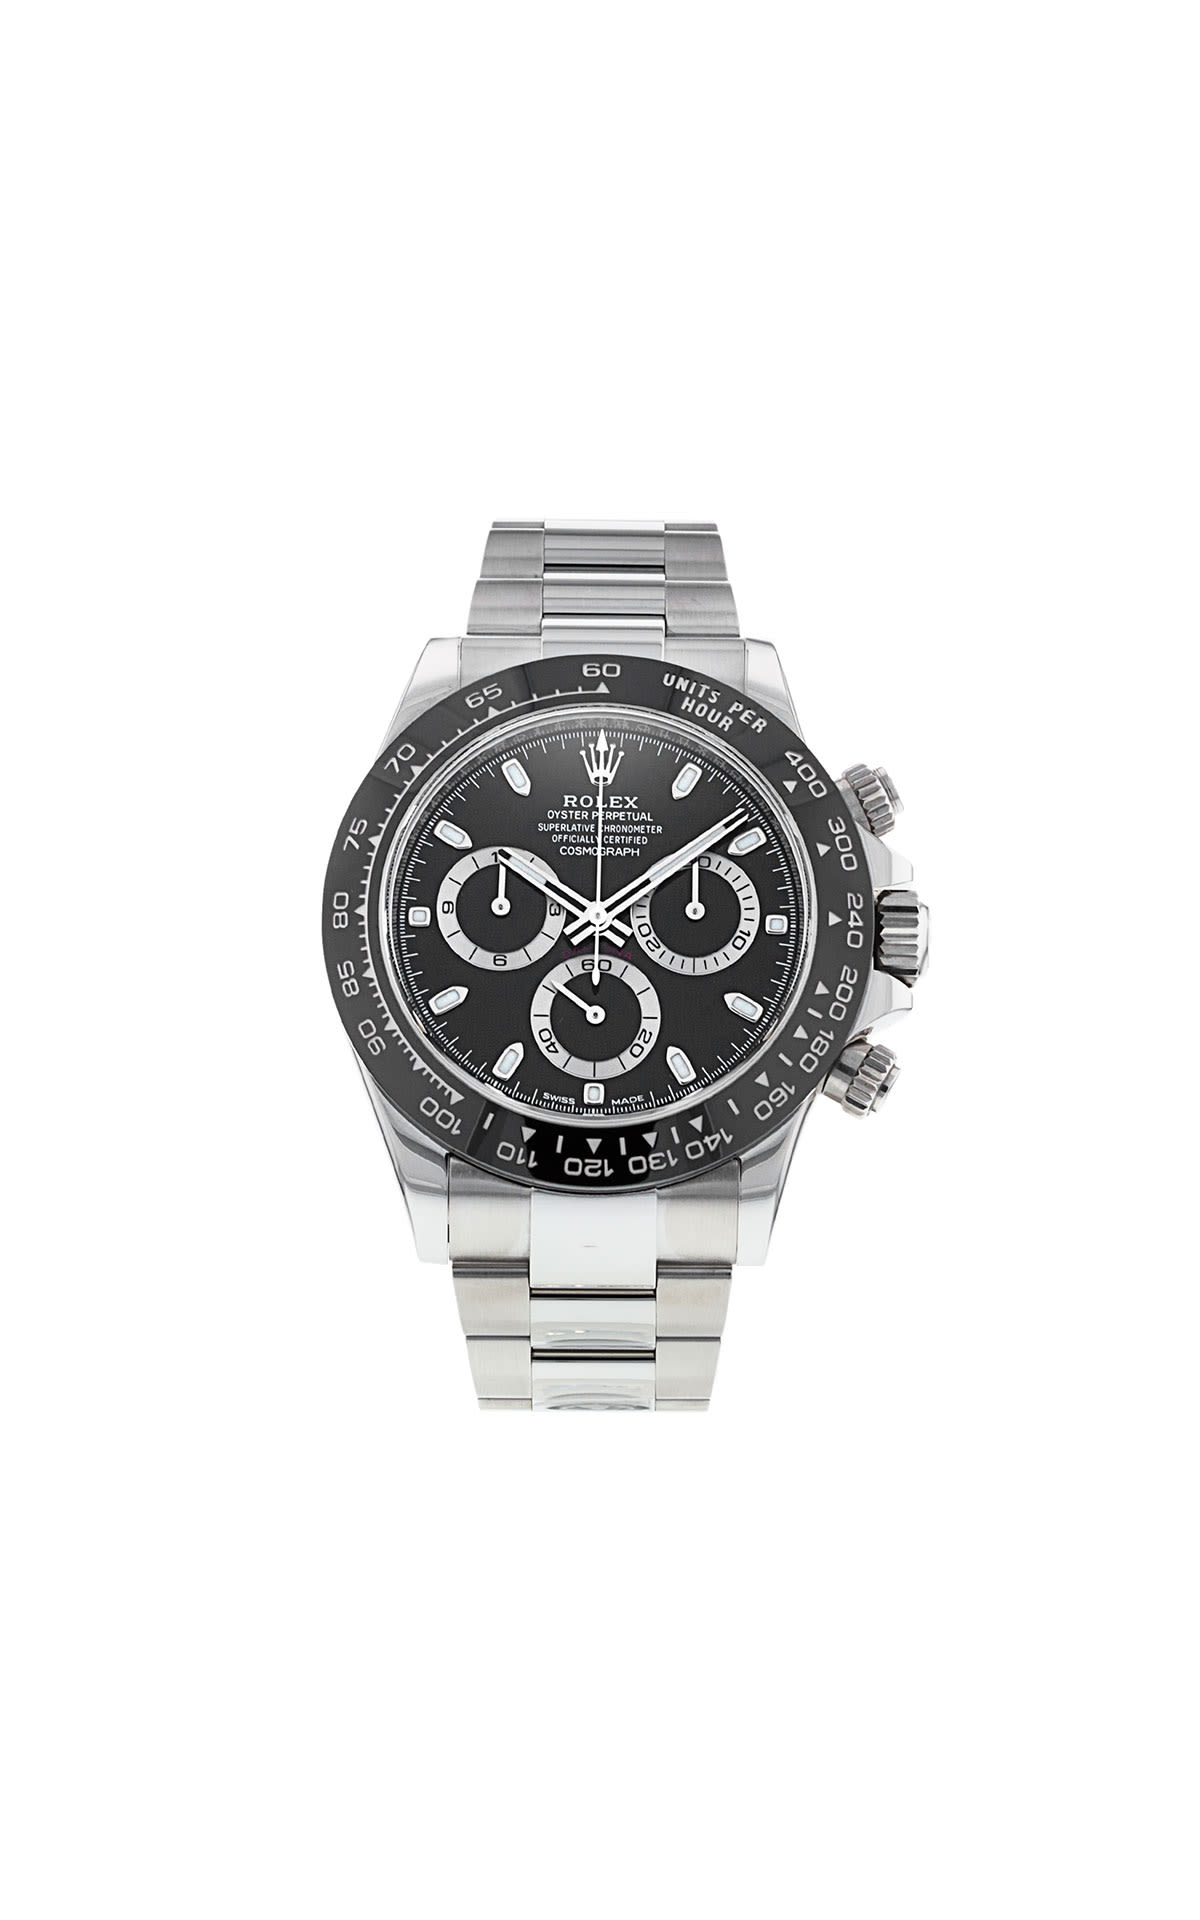 Watchfinder & Co. | Preowned Luxury Watch Specialist | Bicester Village